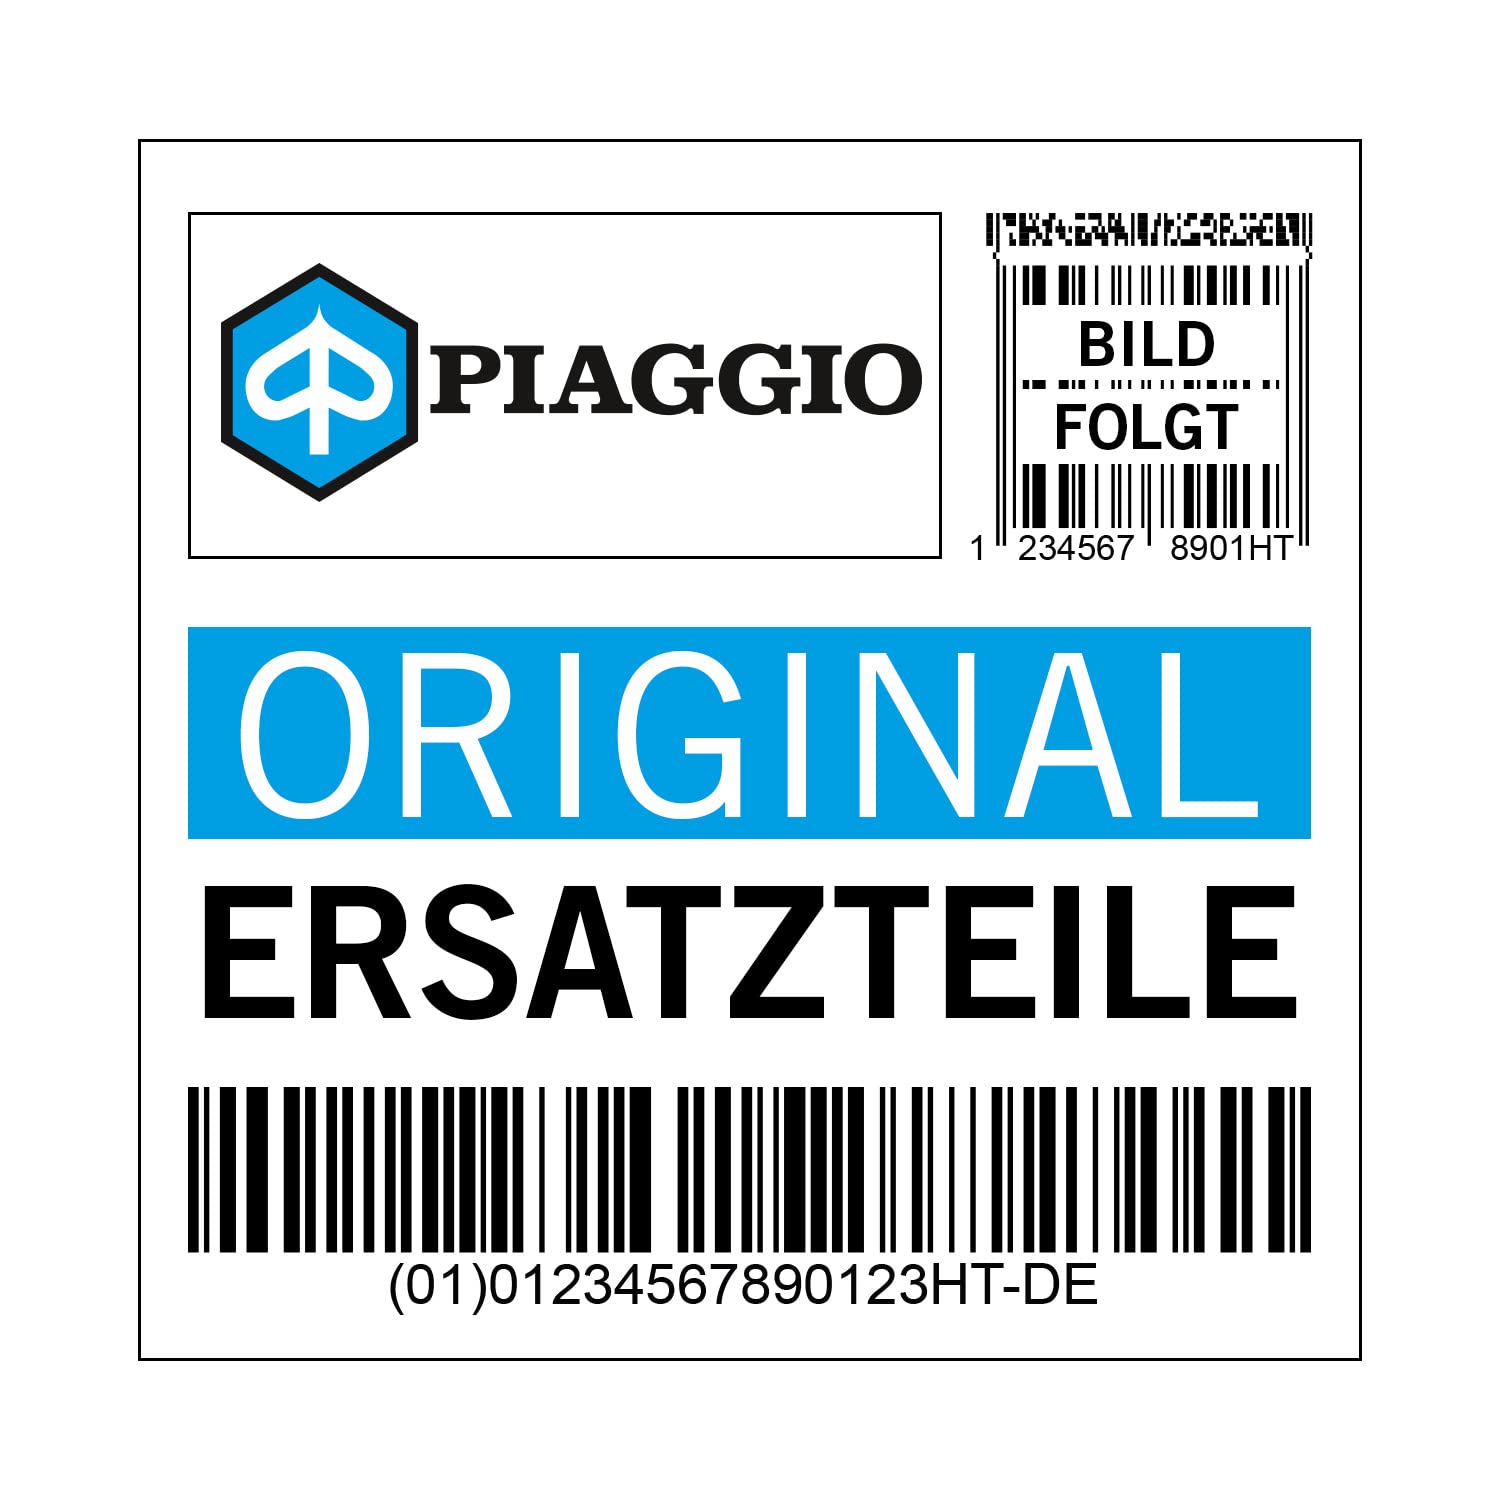 Dekor Piaggio Emblem, Nexus, 624609 von Maxtuned